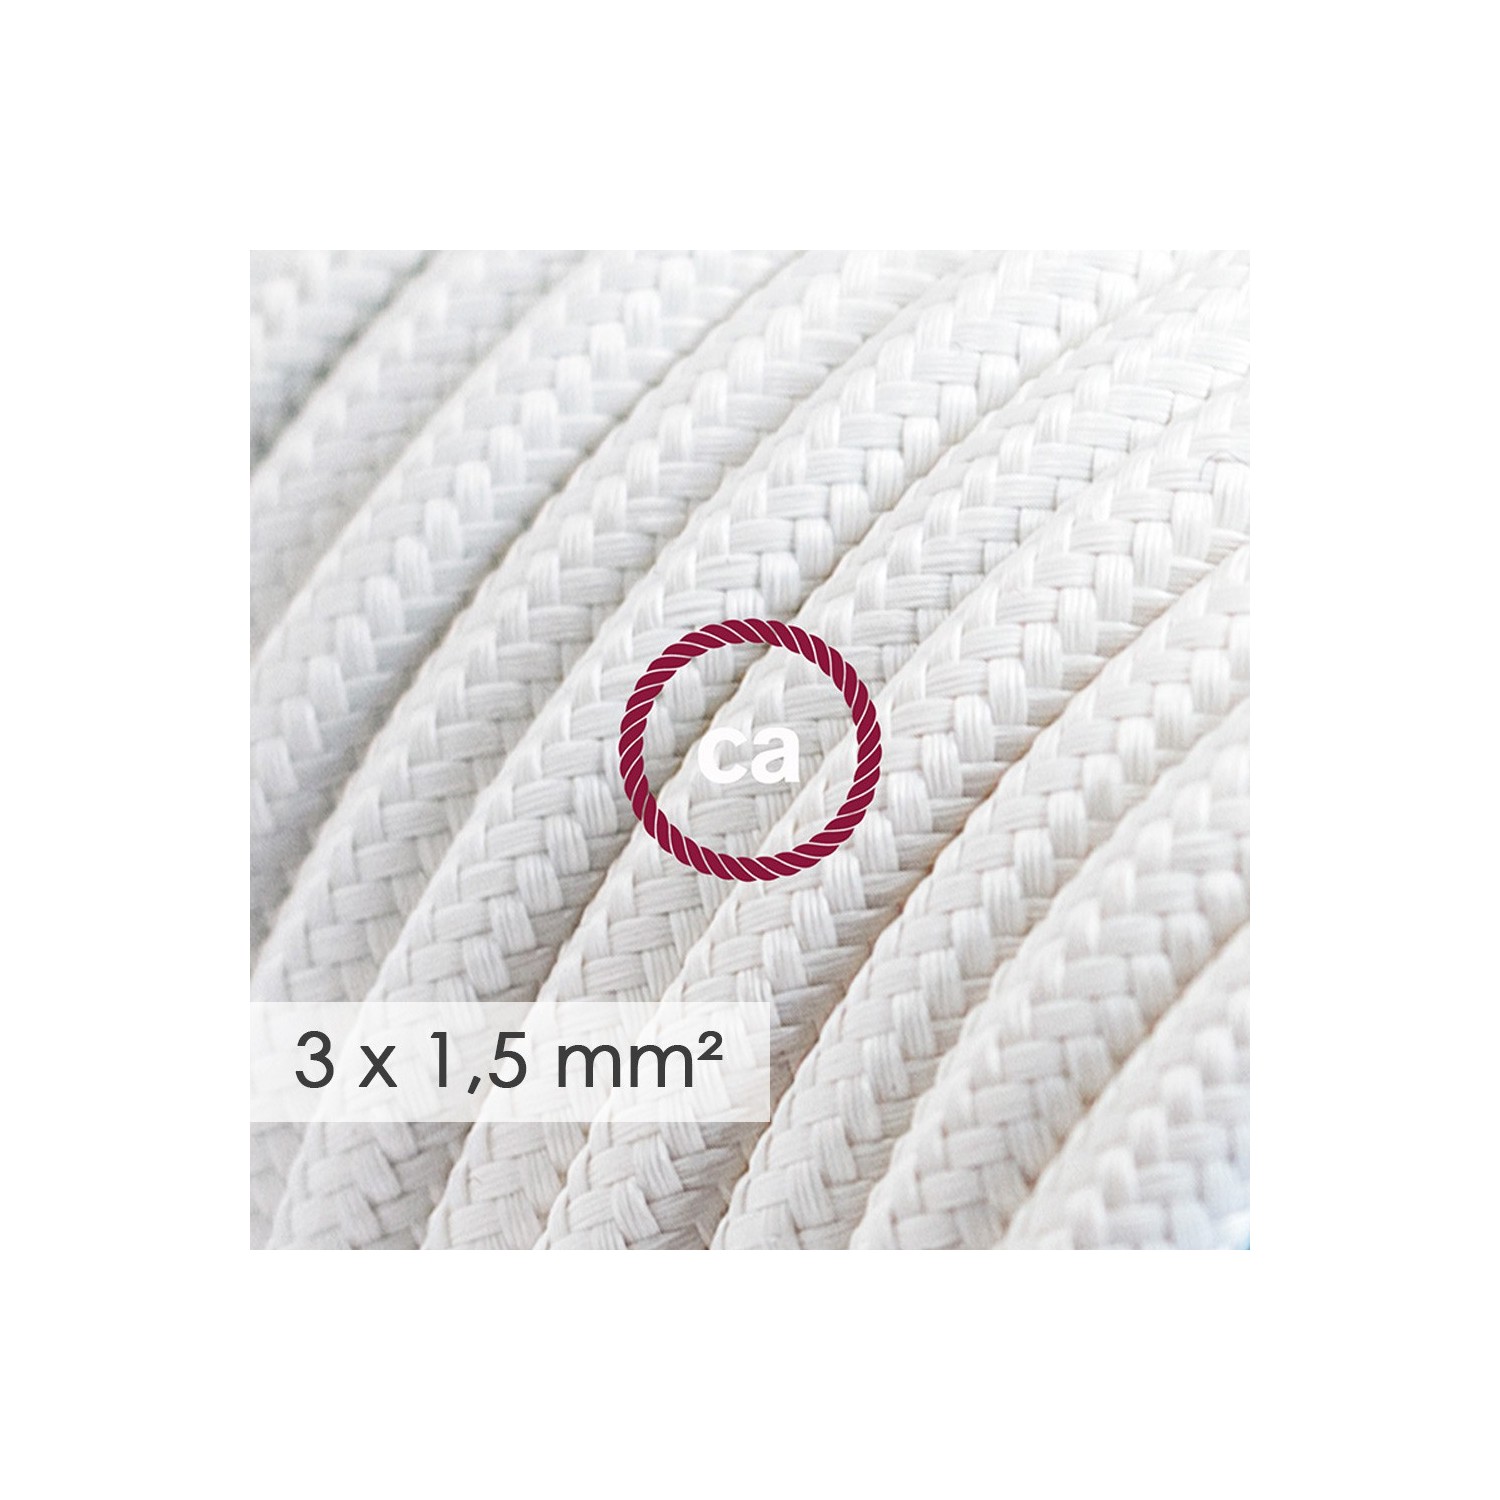 Stekkerdoos met strijkijzersnoer van witte viscose RM01 en randaarde stekker met comfortabele "ring" grip